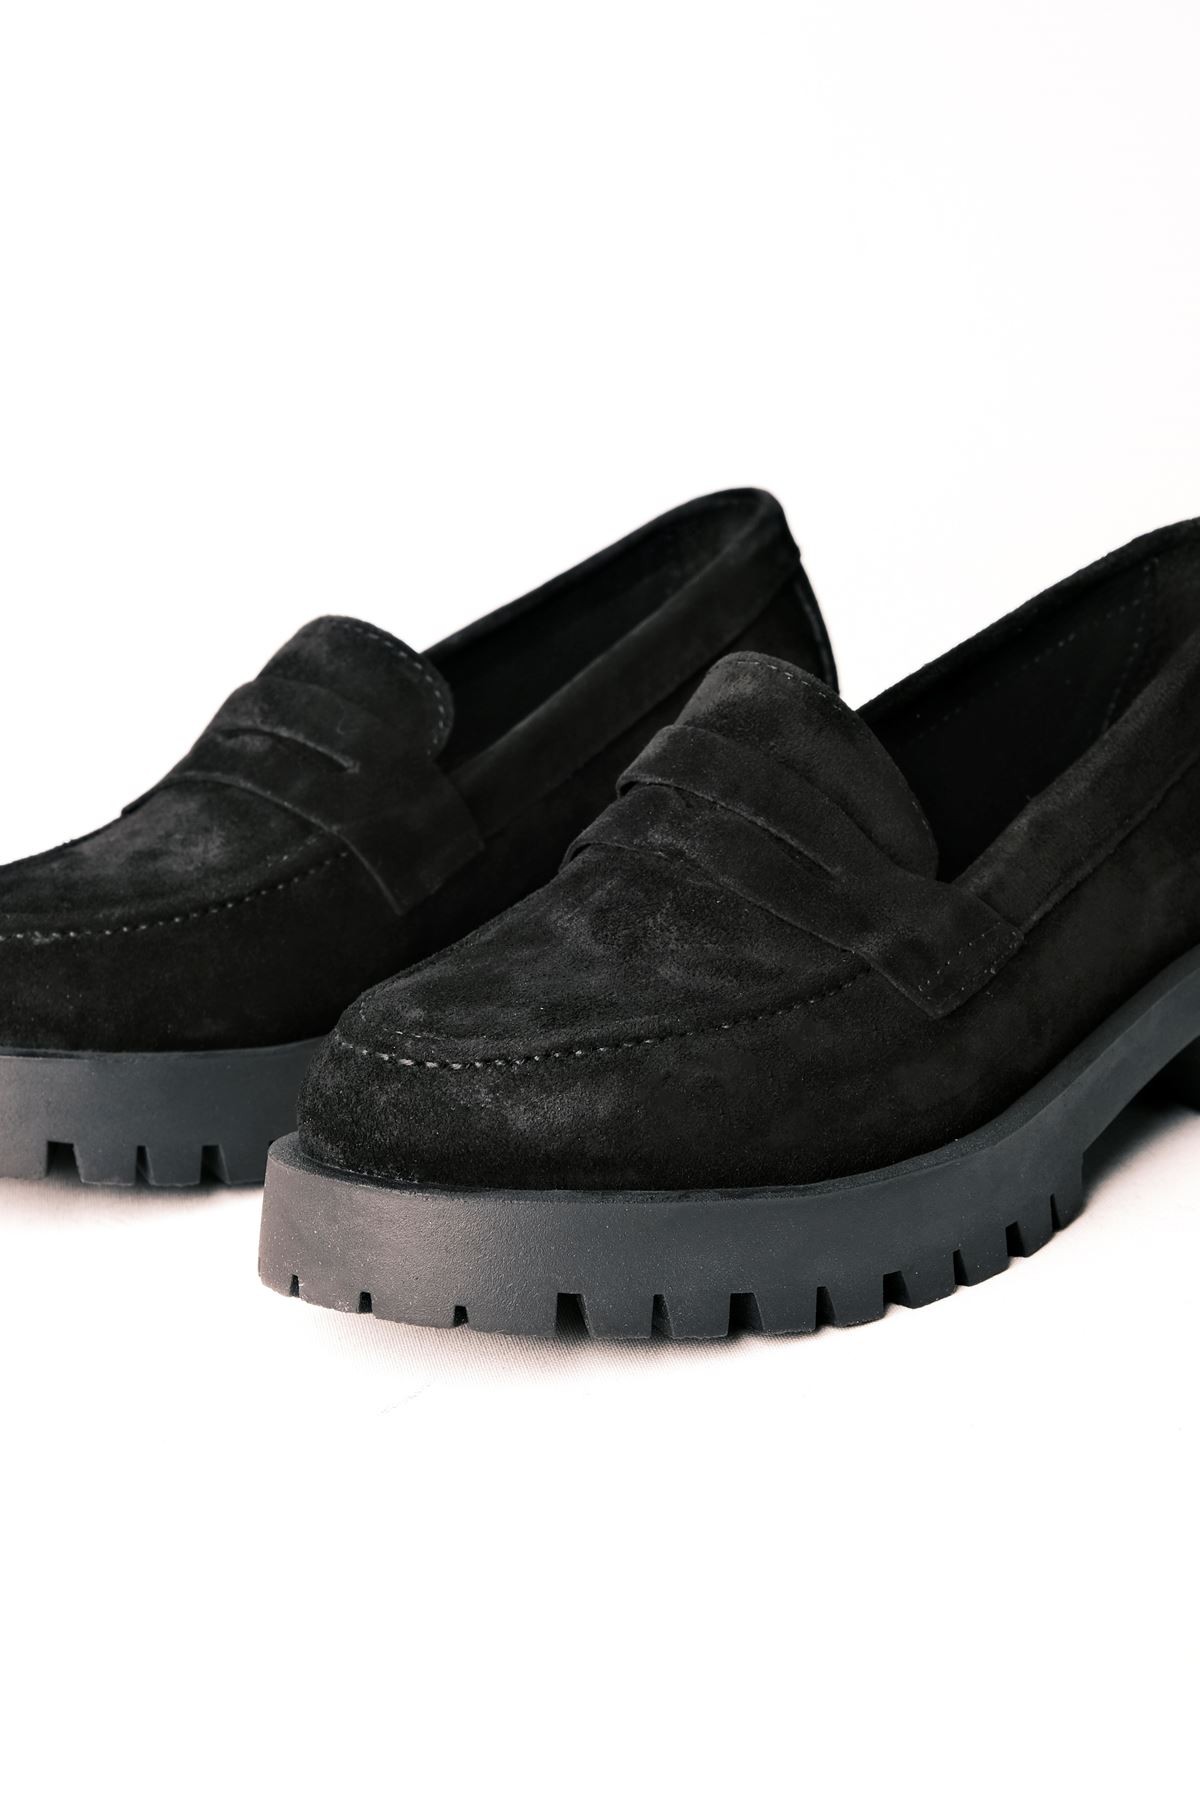 Deva Kadın Hakiki Deri Oxford Ayakkabı Düz Model - S.Siyah